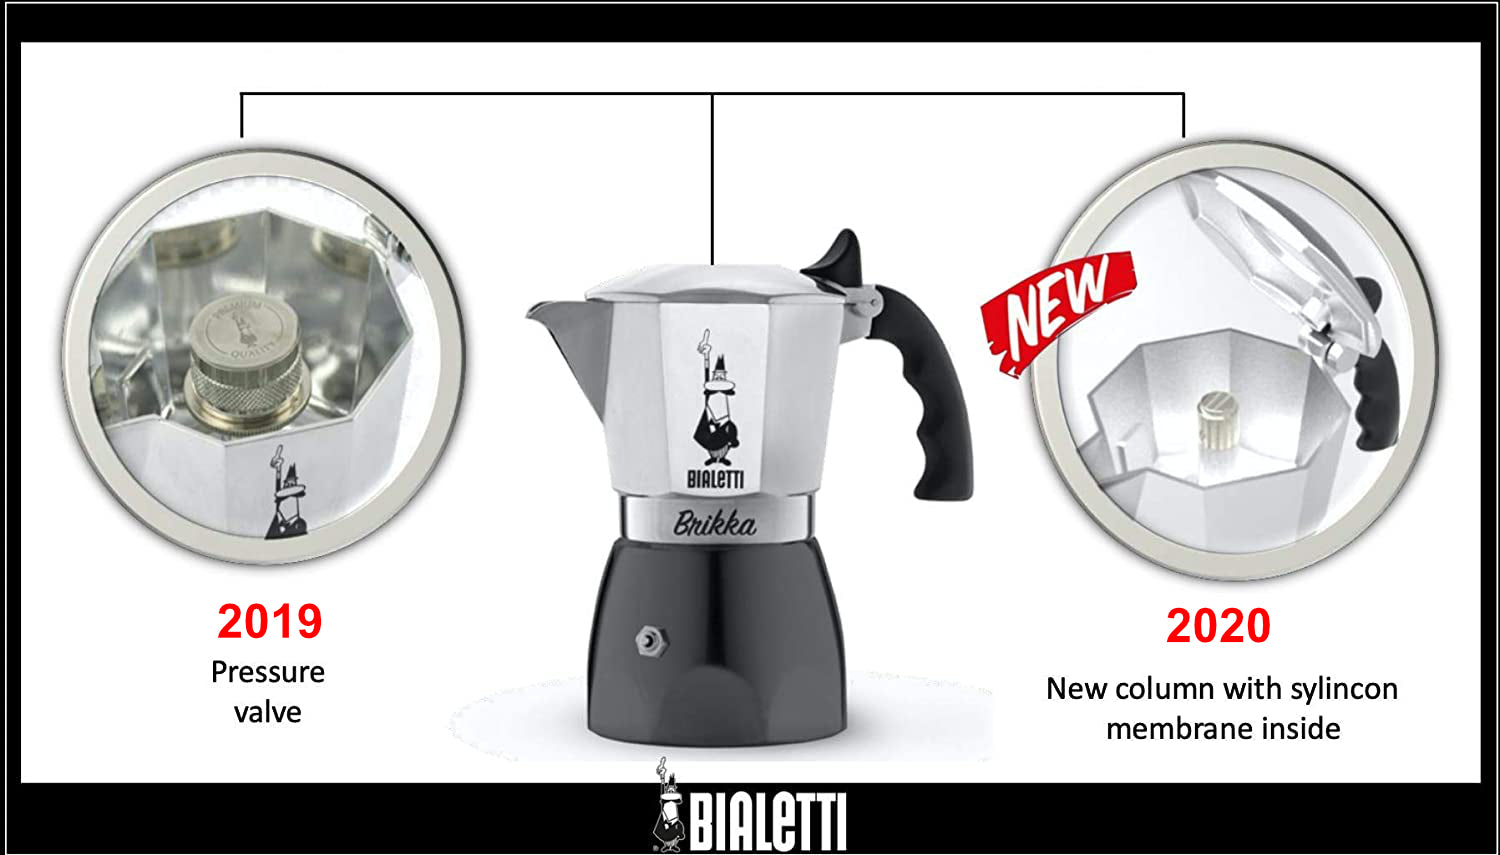 Bialetti Brikka - stove top espresso producing crema